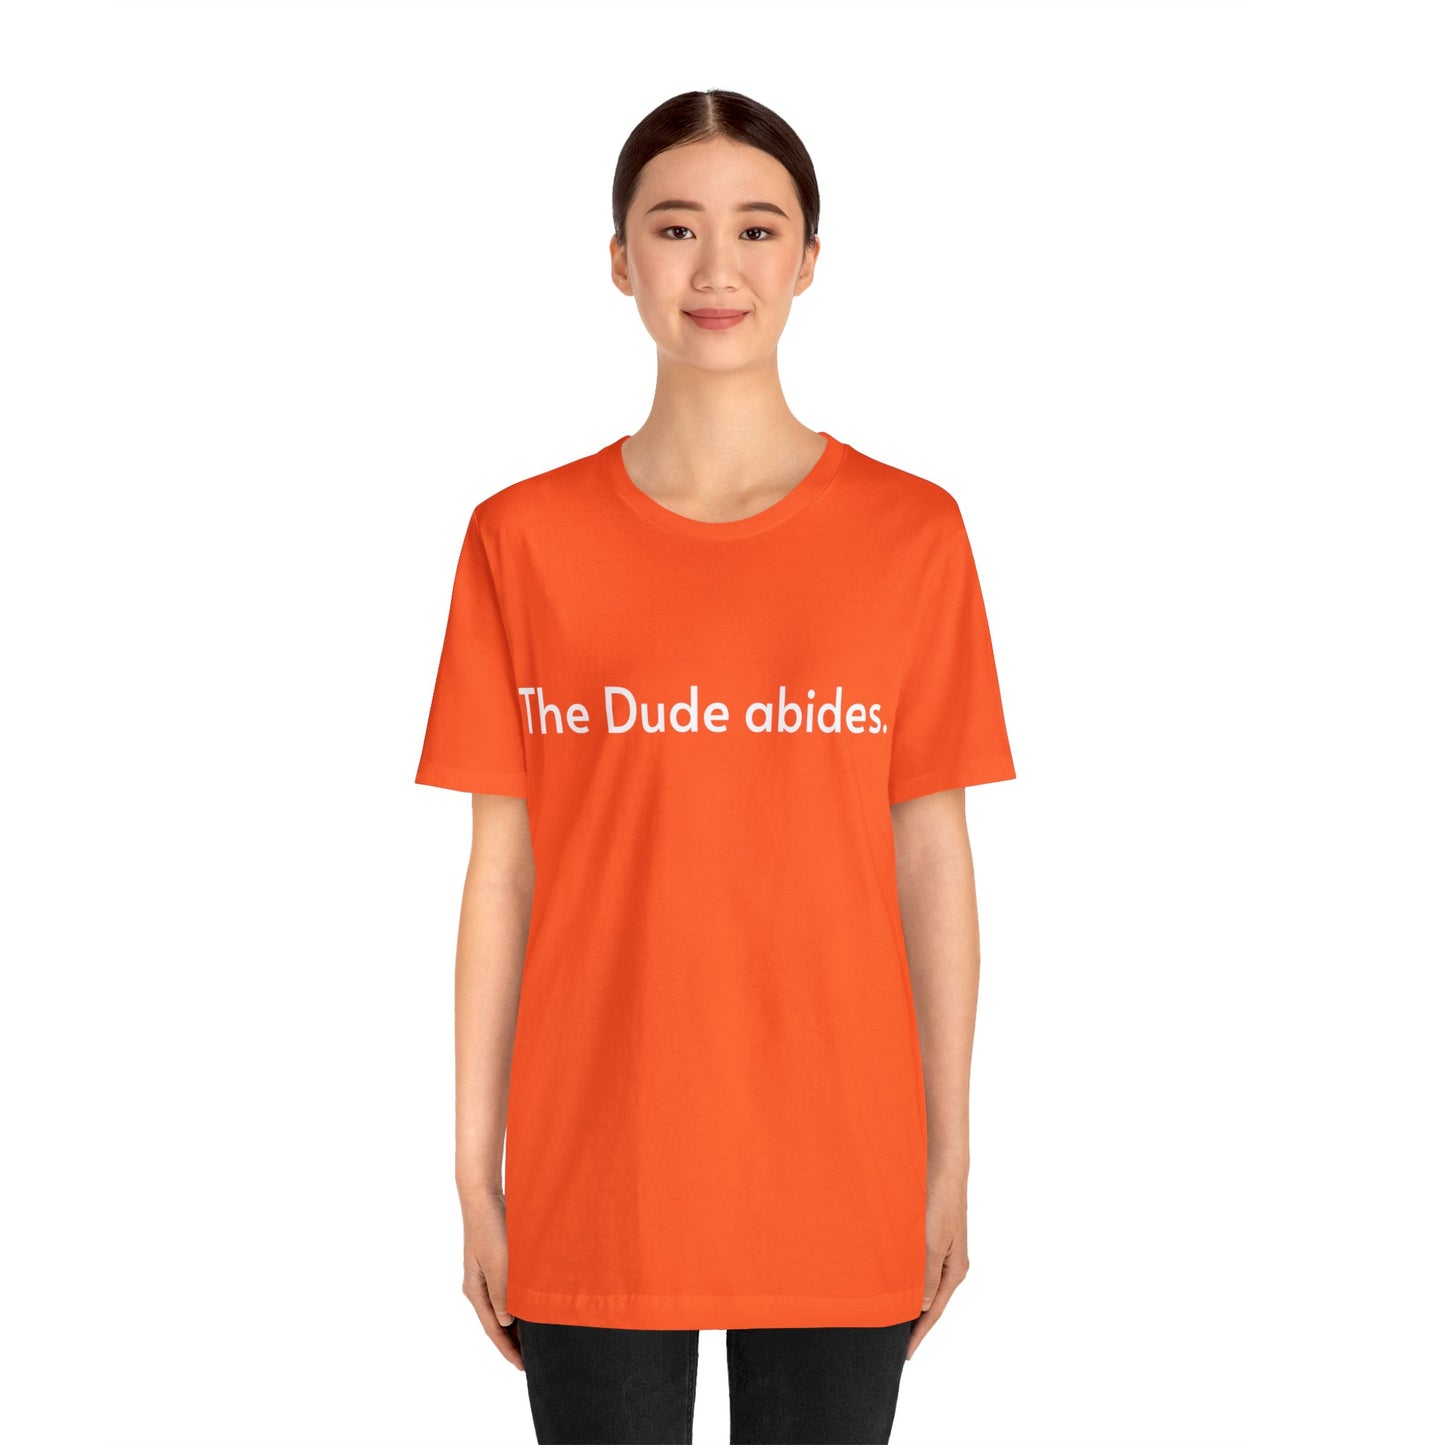 The Dude Abides